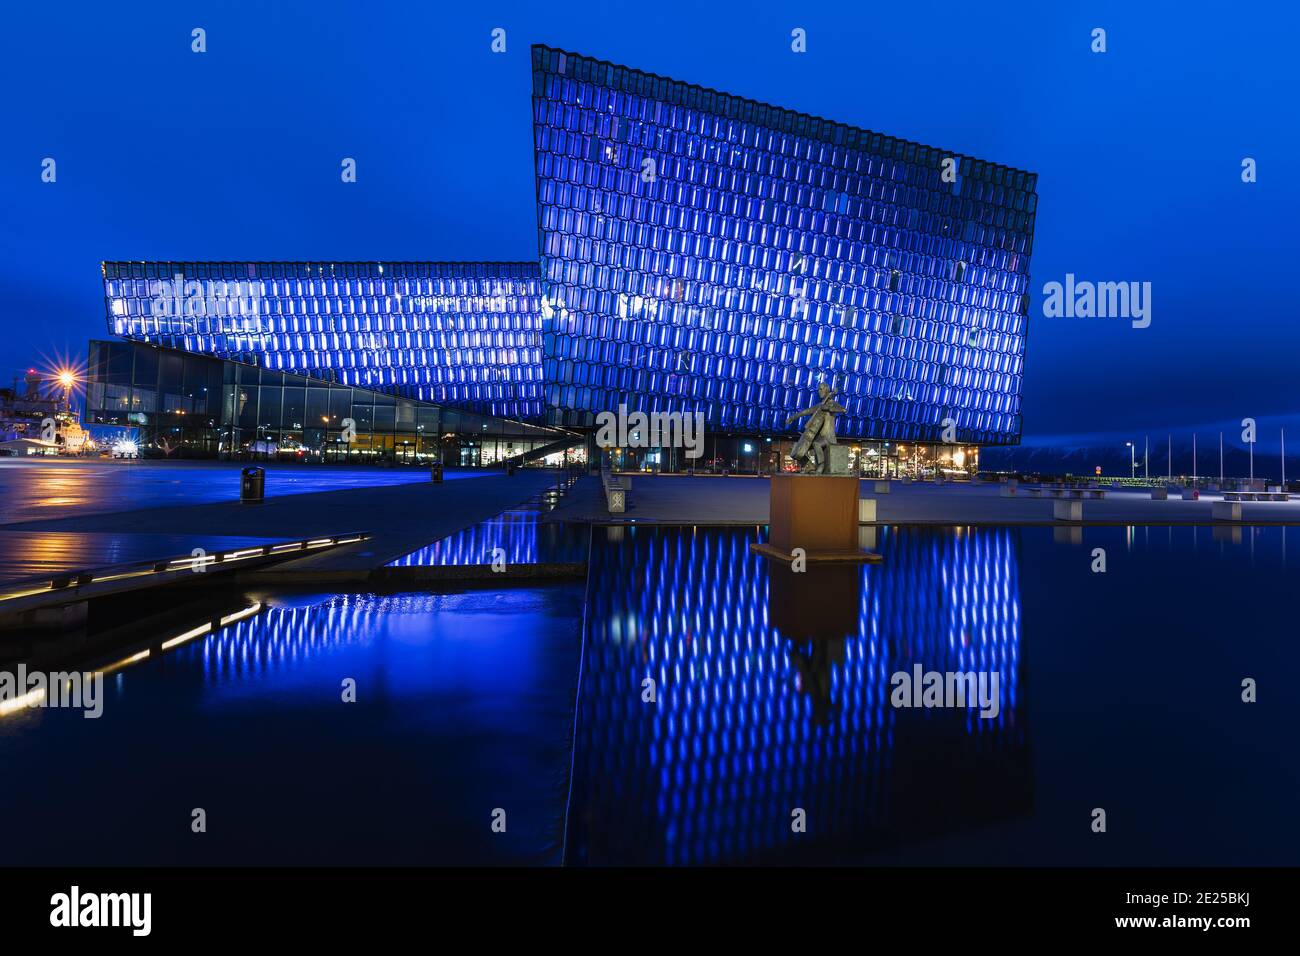 Vue de nuit sur Harpa - l'Opéra de Reykjavik, qui a reçu le prix Mies van der Rohe pour l'architecture contemporaine. Banque D'Images